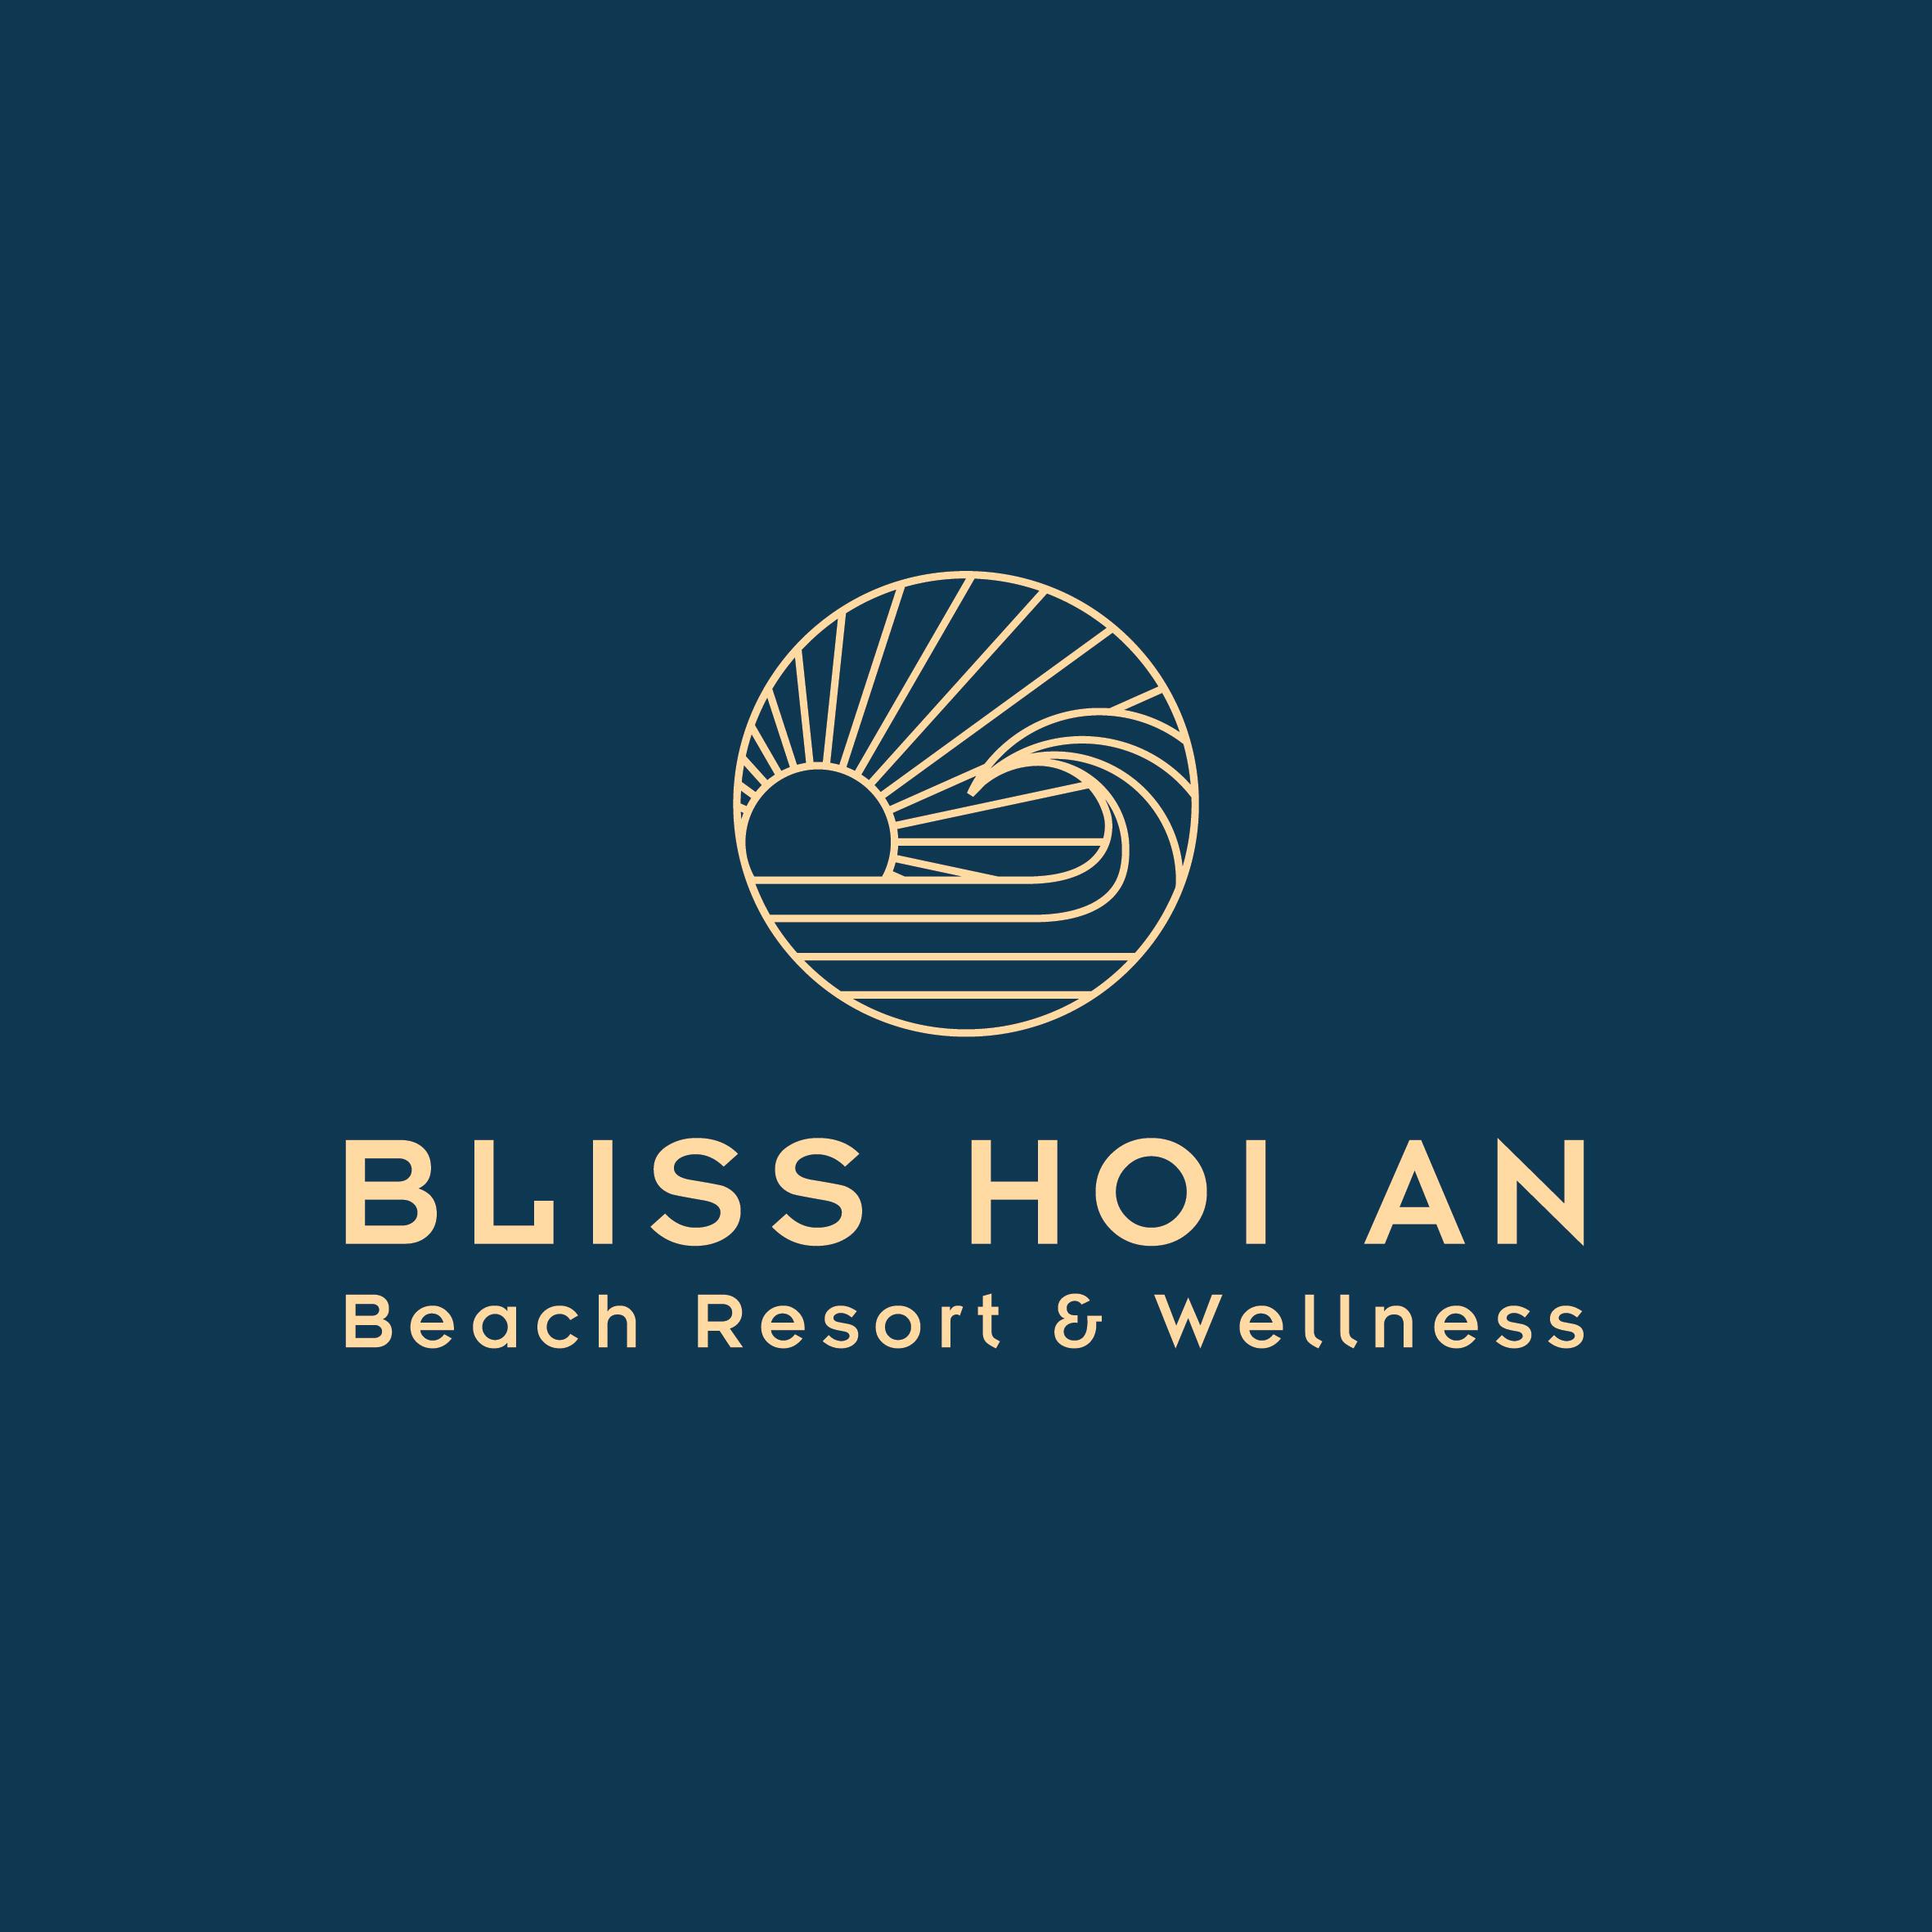 BLISS HOI AN BEACH RESORT & WELLNESS